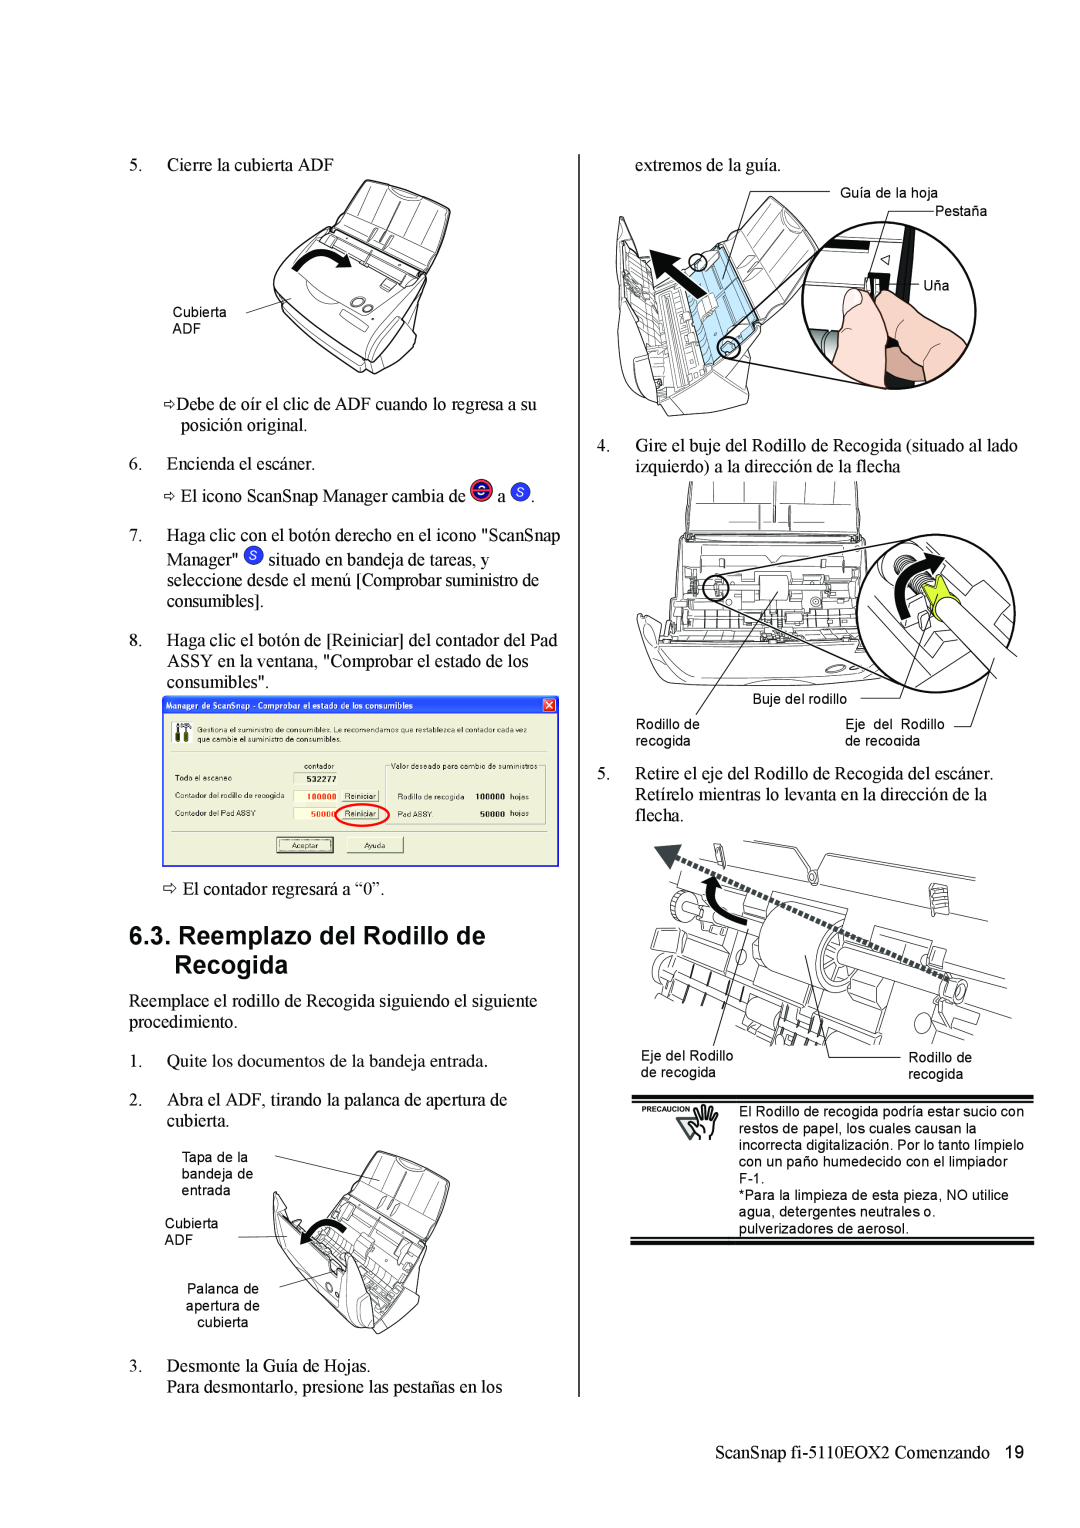 Fujitsu fi-5110EOX2 manual Reemplazo del Rodillo de Recogida, El Rodillo de recogida podría estar sucio con 